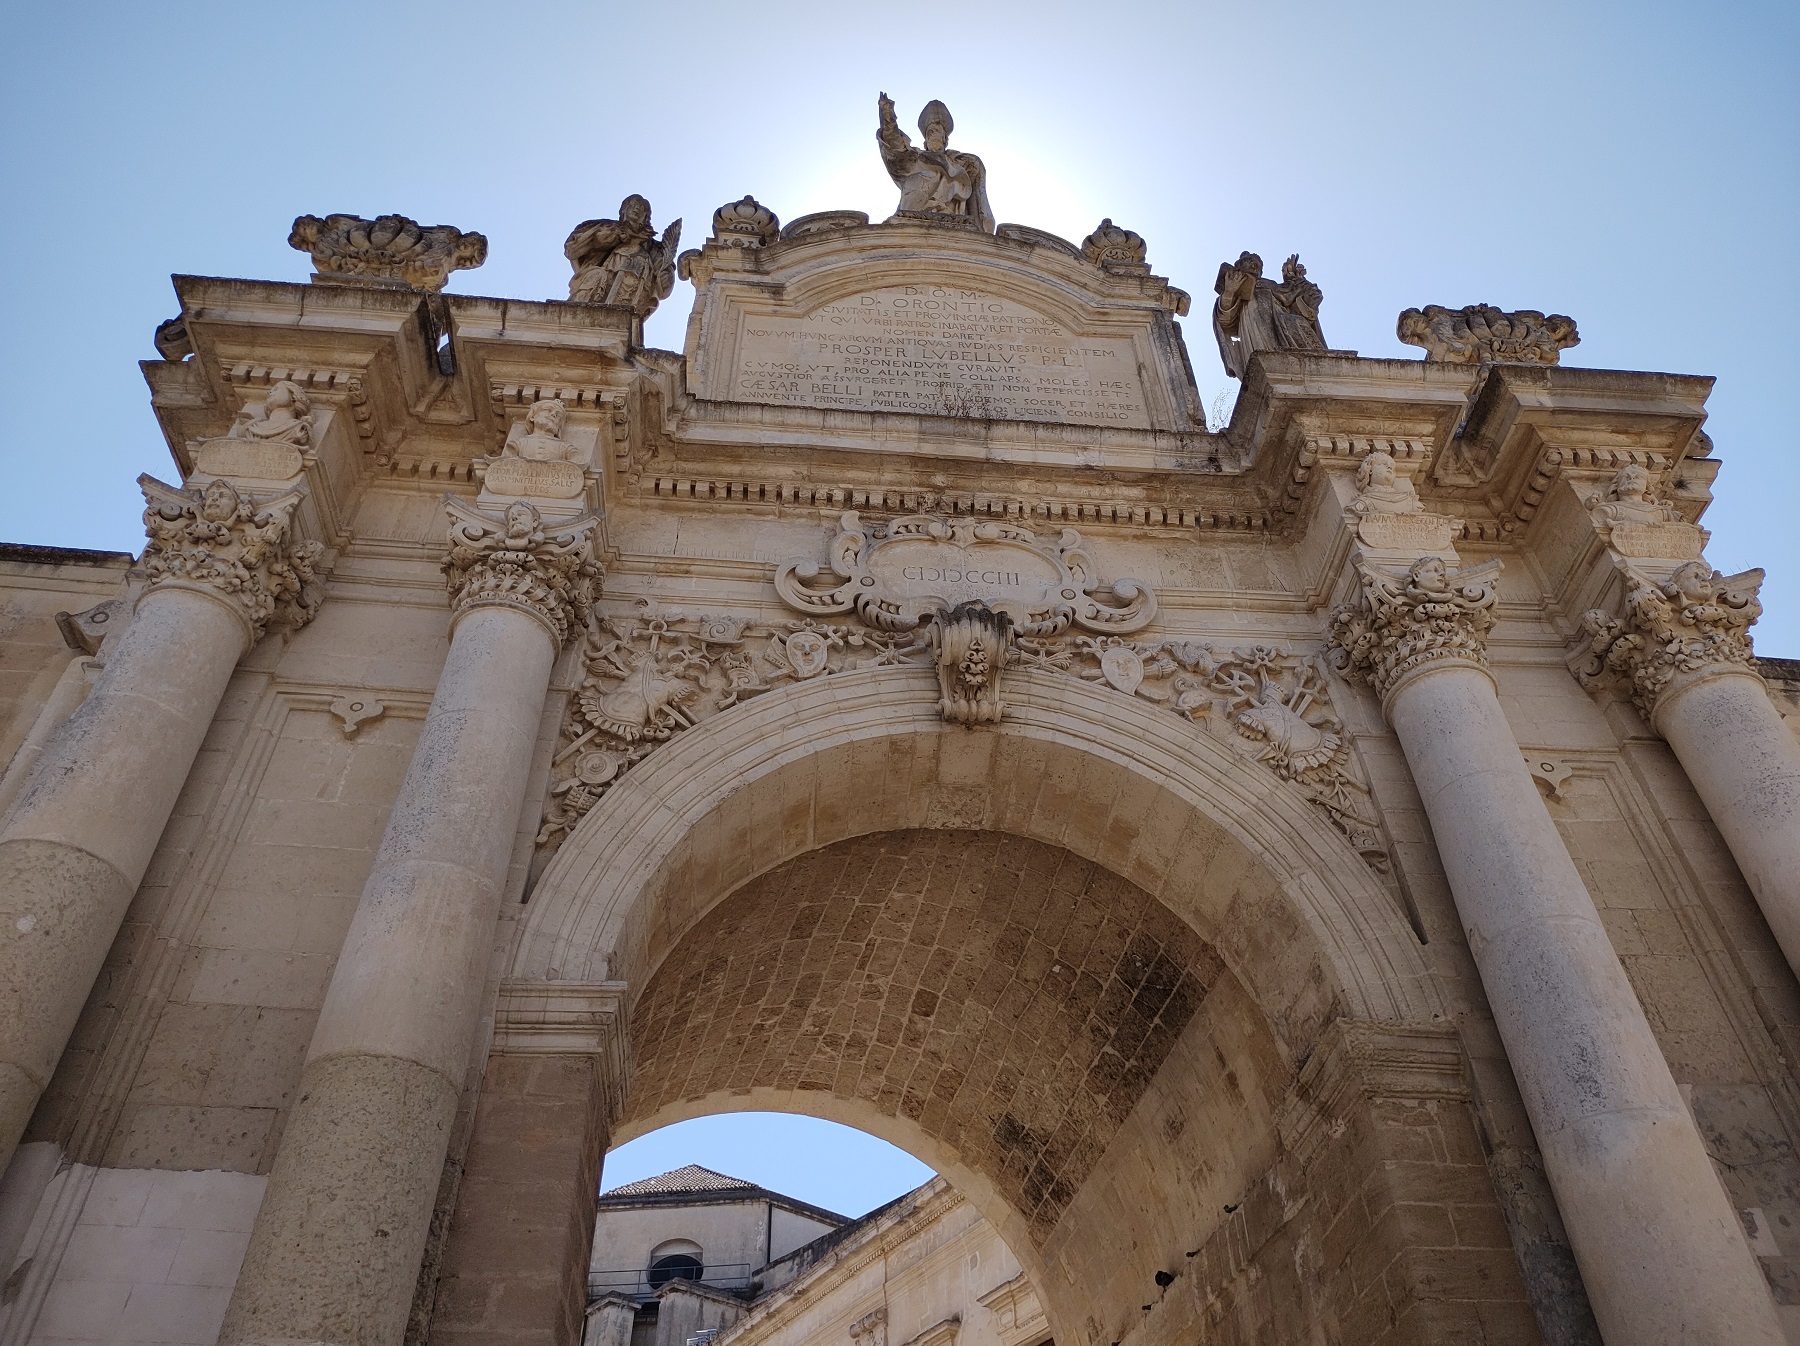 Porta Rudiae, Lecce